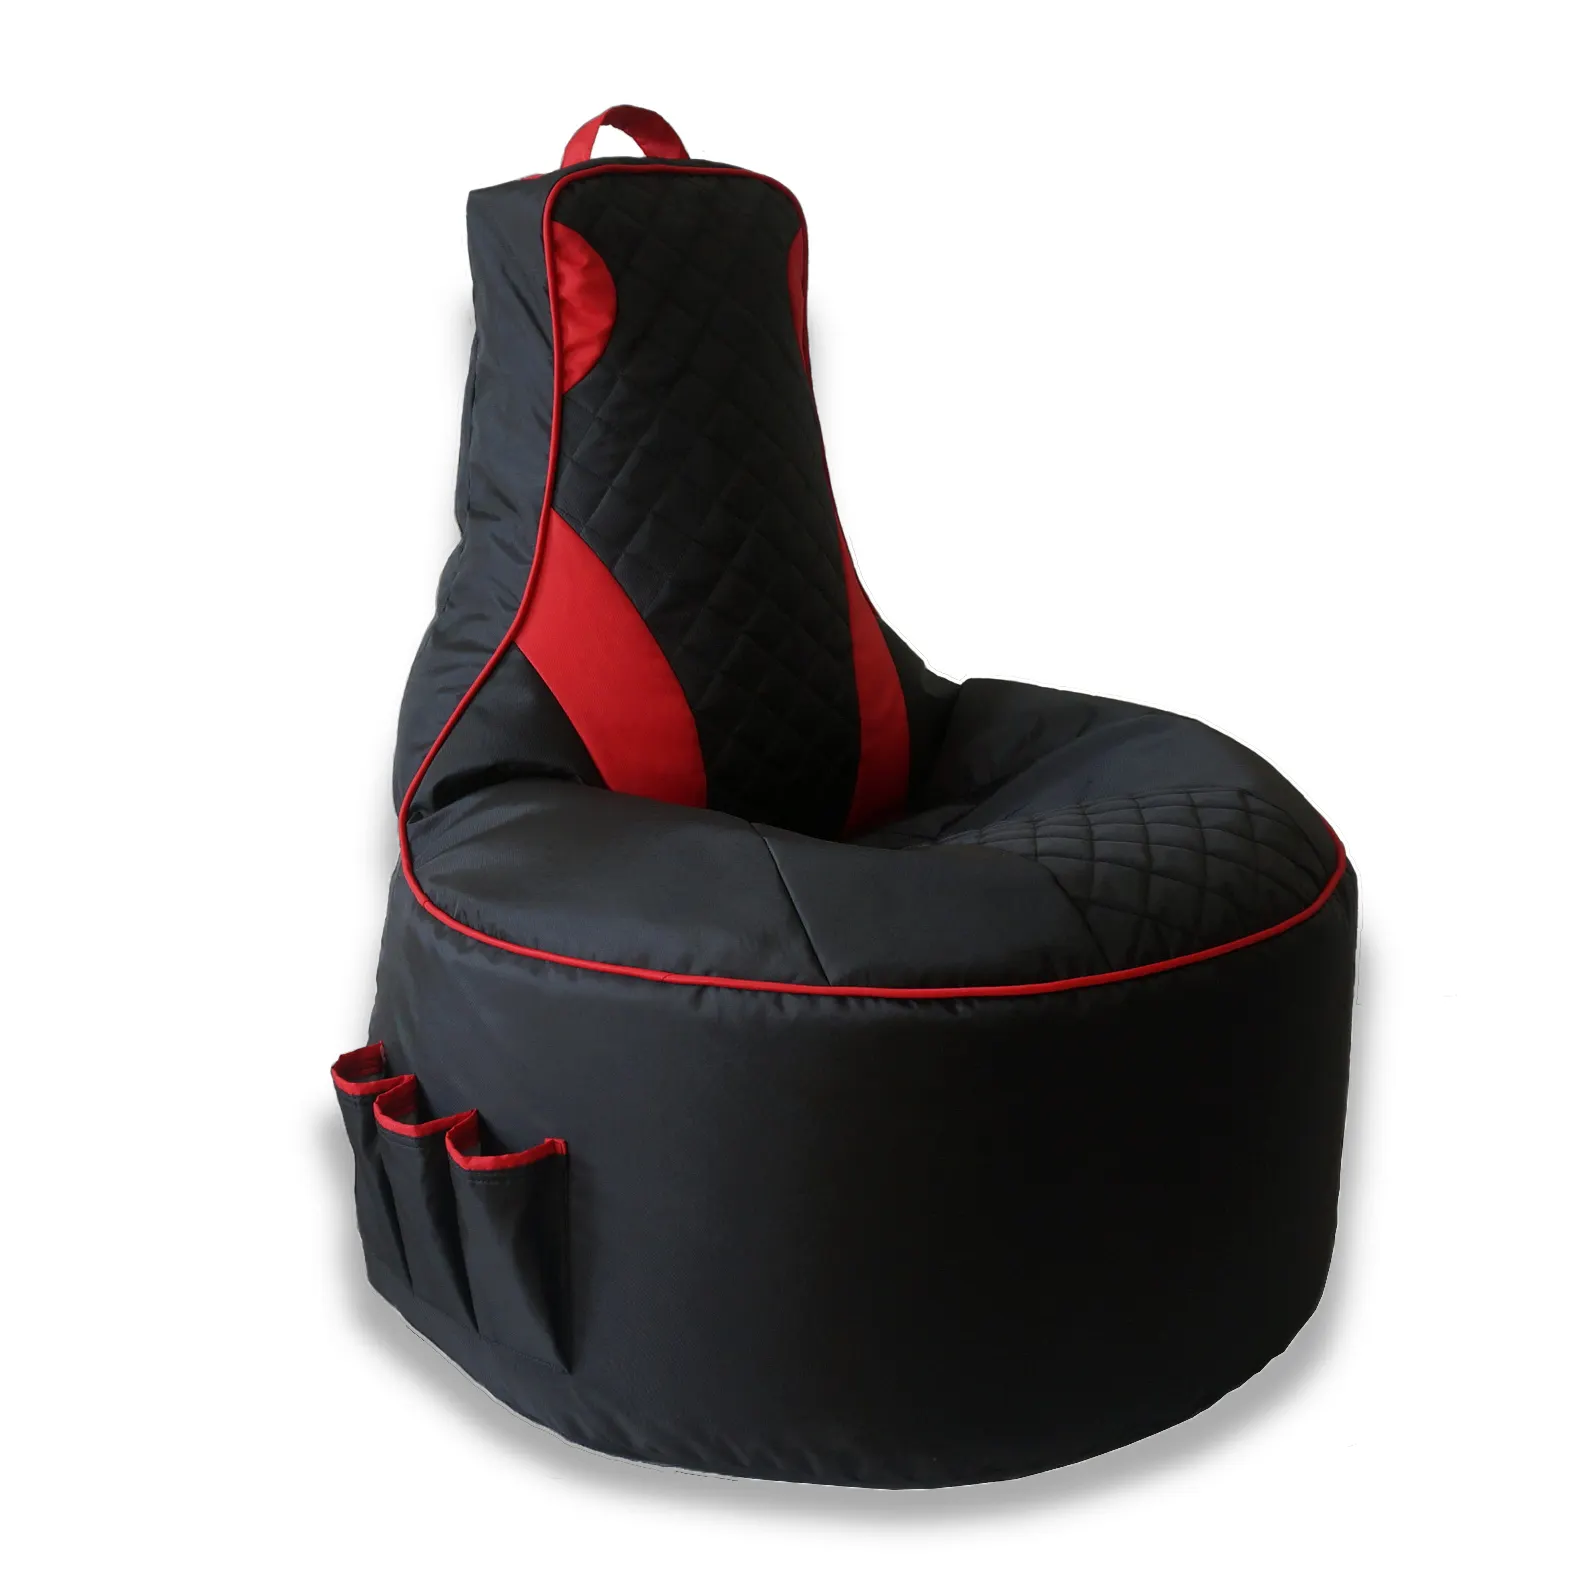 Bestseller schwarz & rot 420D Oxford Sitzsack Sofa Spiels tuhl Sitzsack ungefüllt